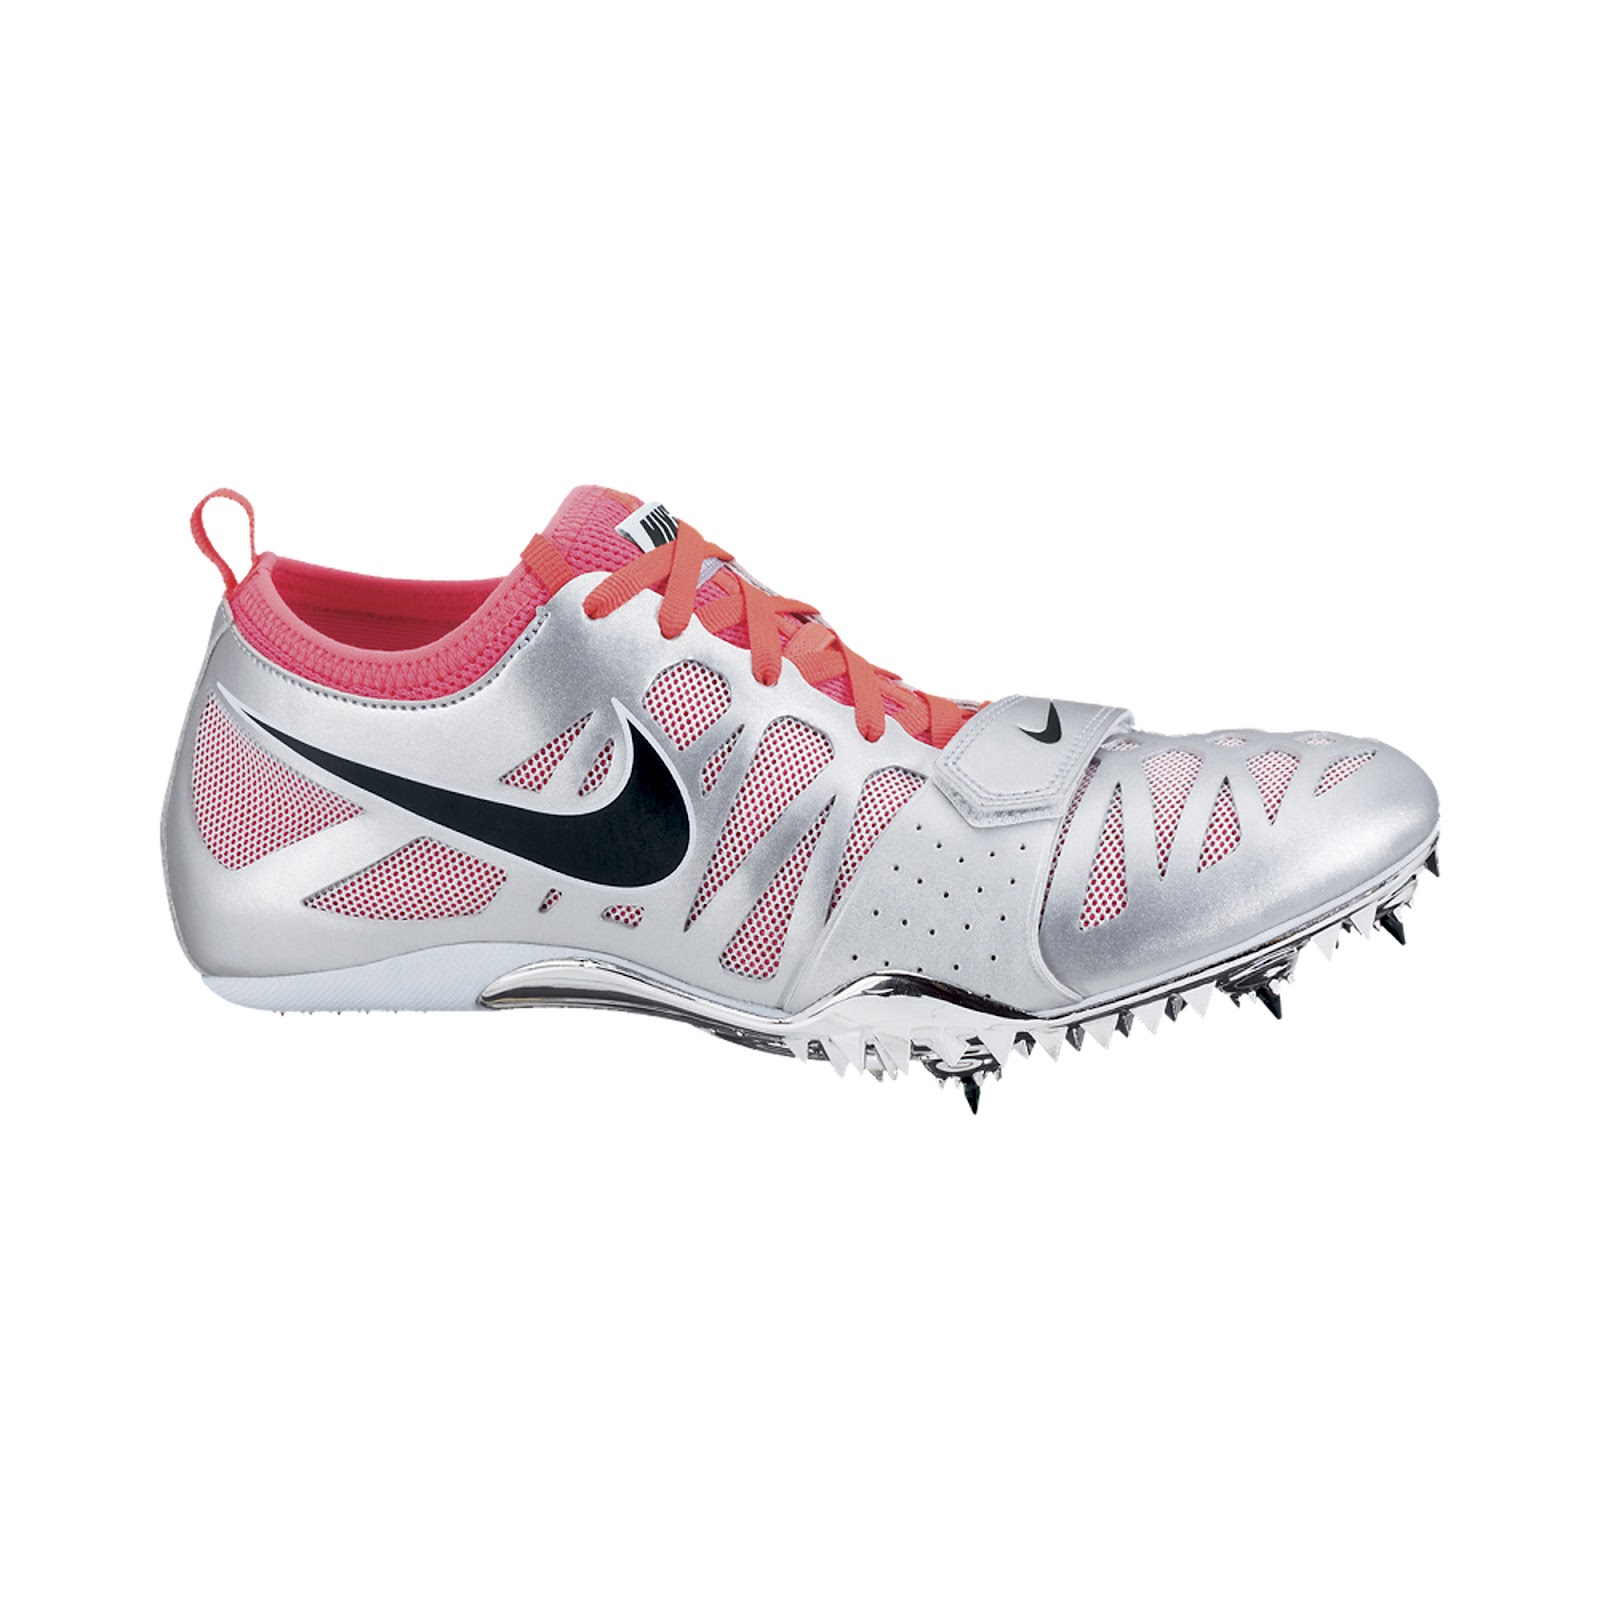 Ponte de pie en su lugar especificación tienda de comestibles The Running Shoe Guru: Nike 2012 Track and Field Spikes and Shoes